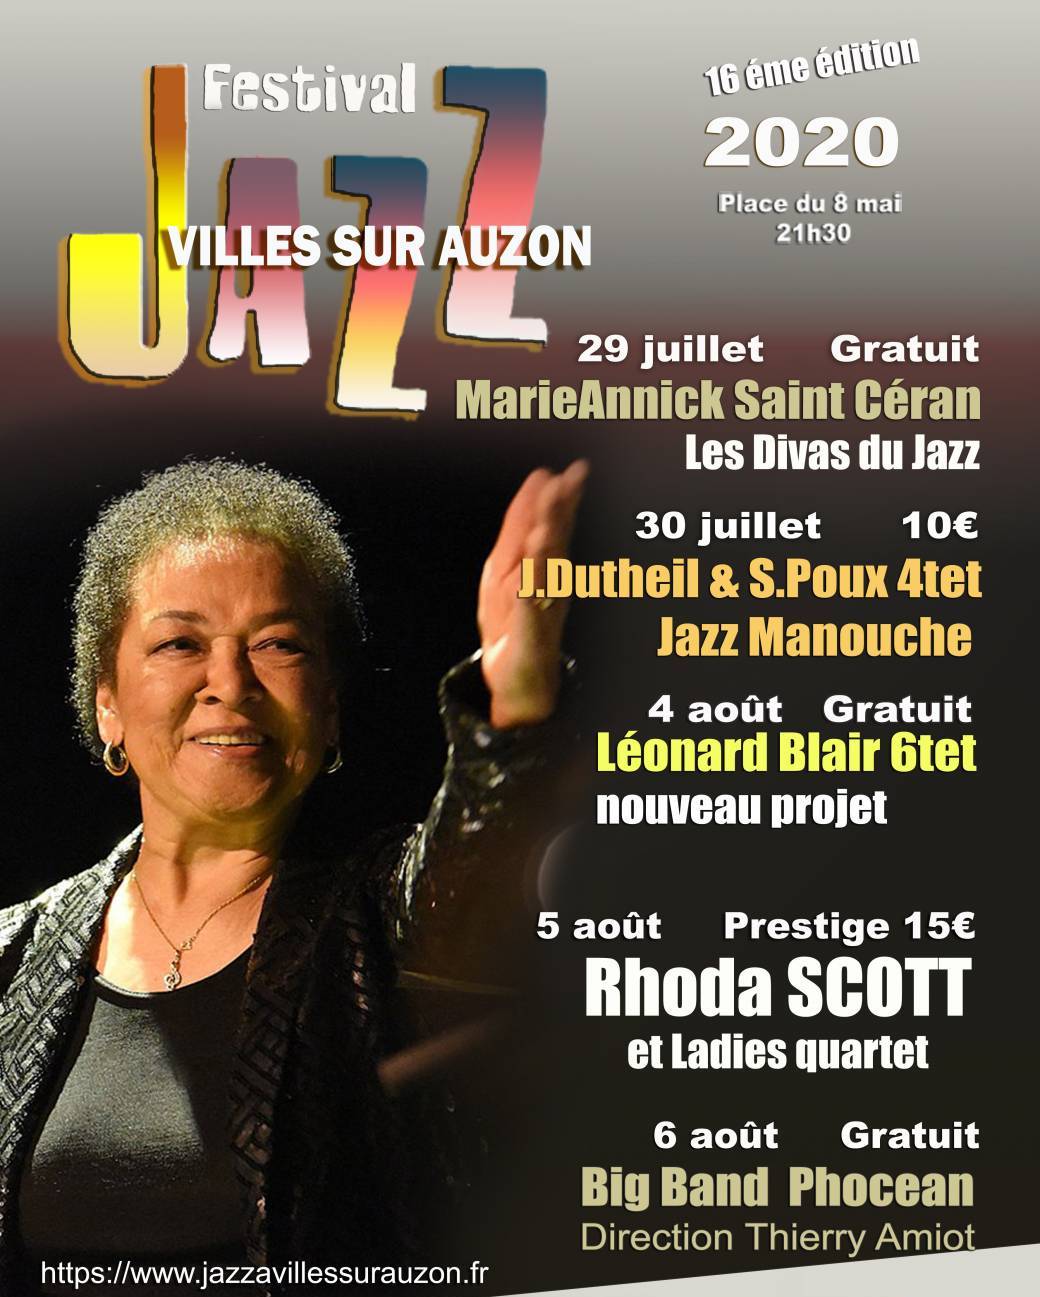 Festival de jazz  Villes sur Auzon  du 29 juillet au 6 août  2020